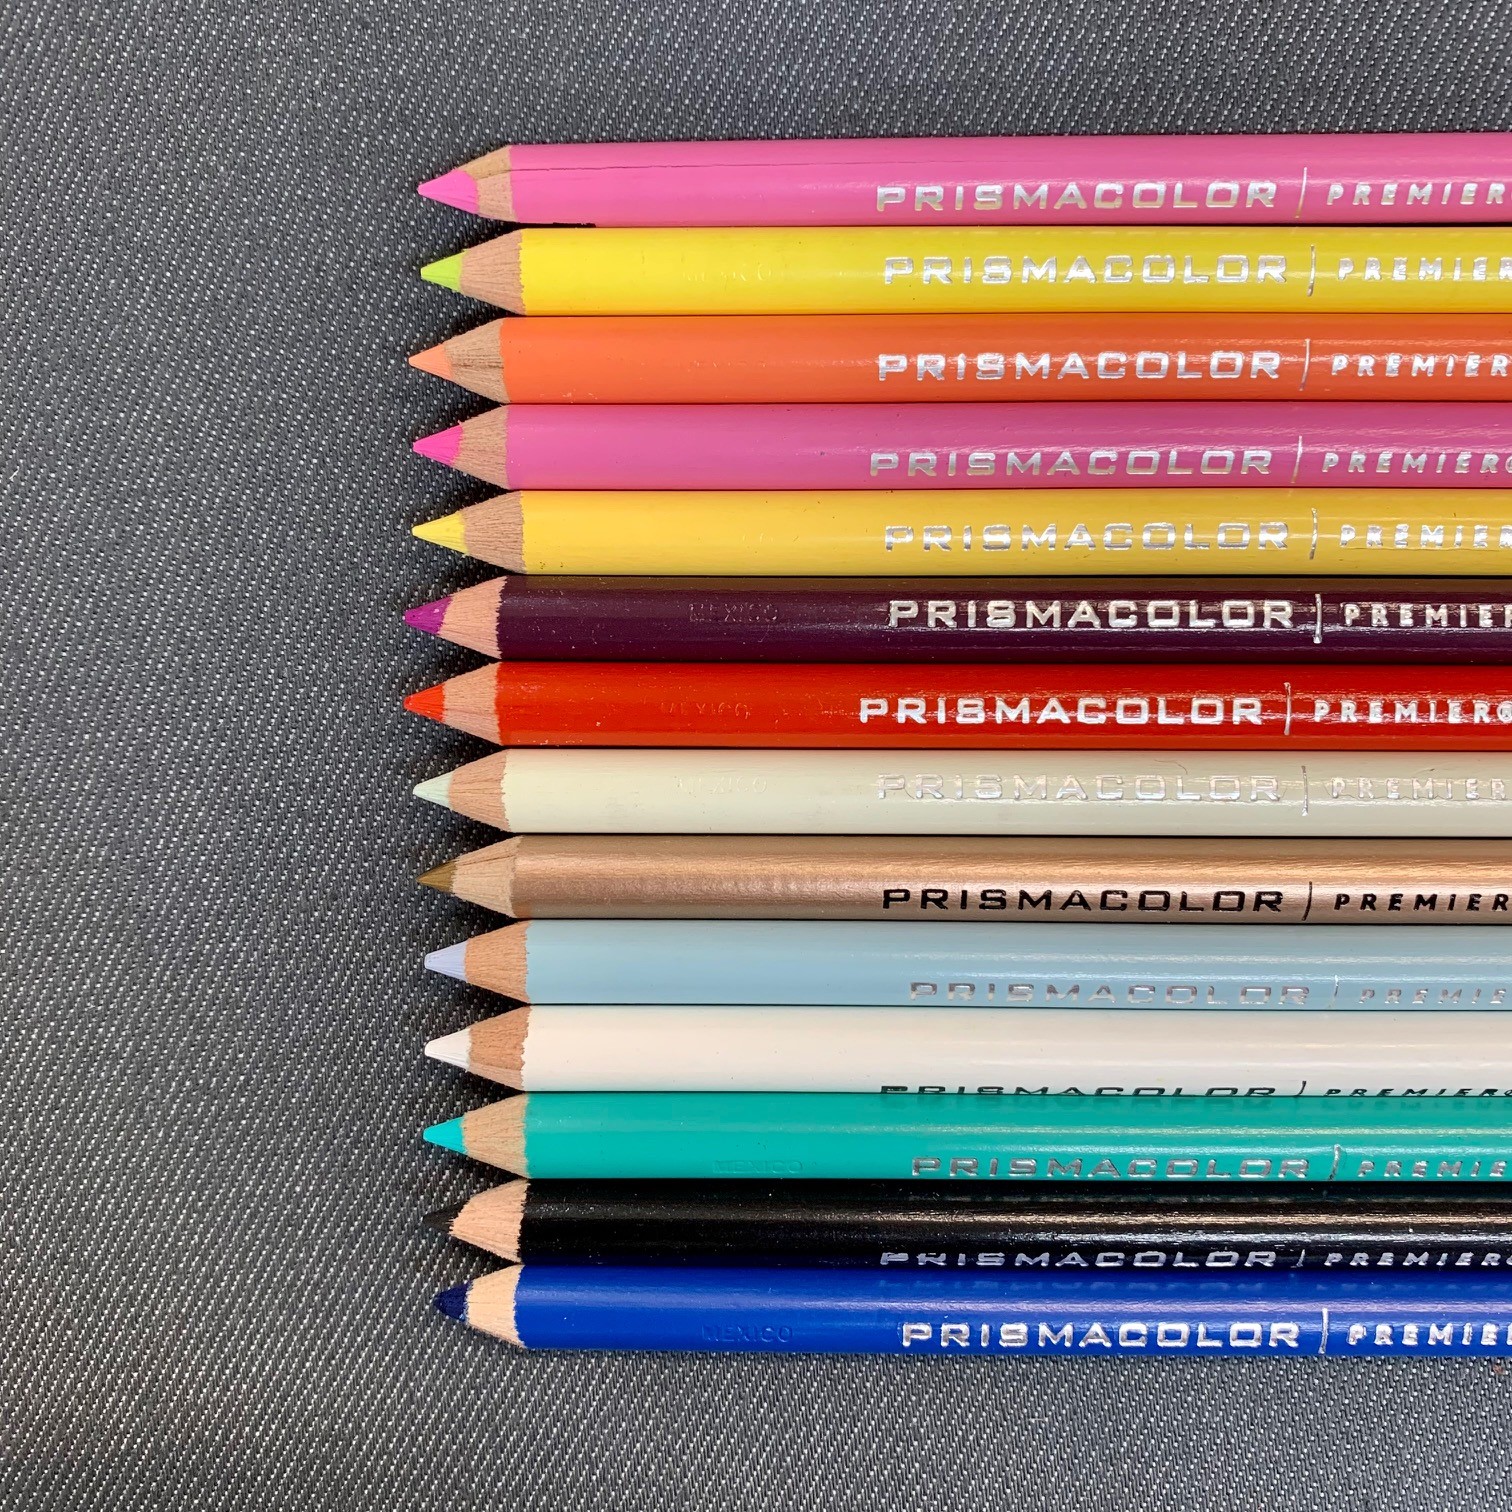 https://paintspot.ca/wp-content/uploads/2021/11/prismacolor-premier-colored-pencils.jpg